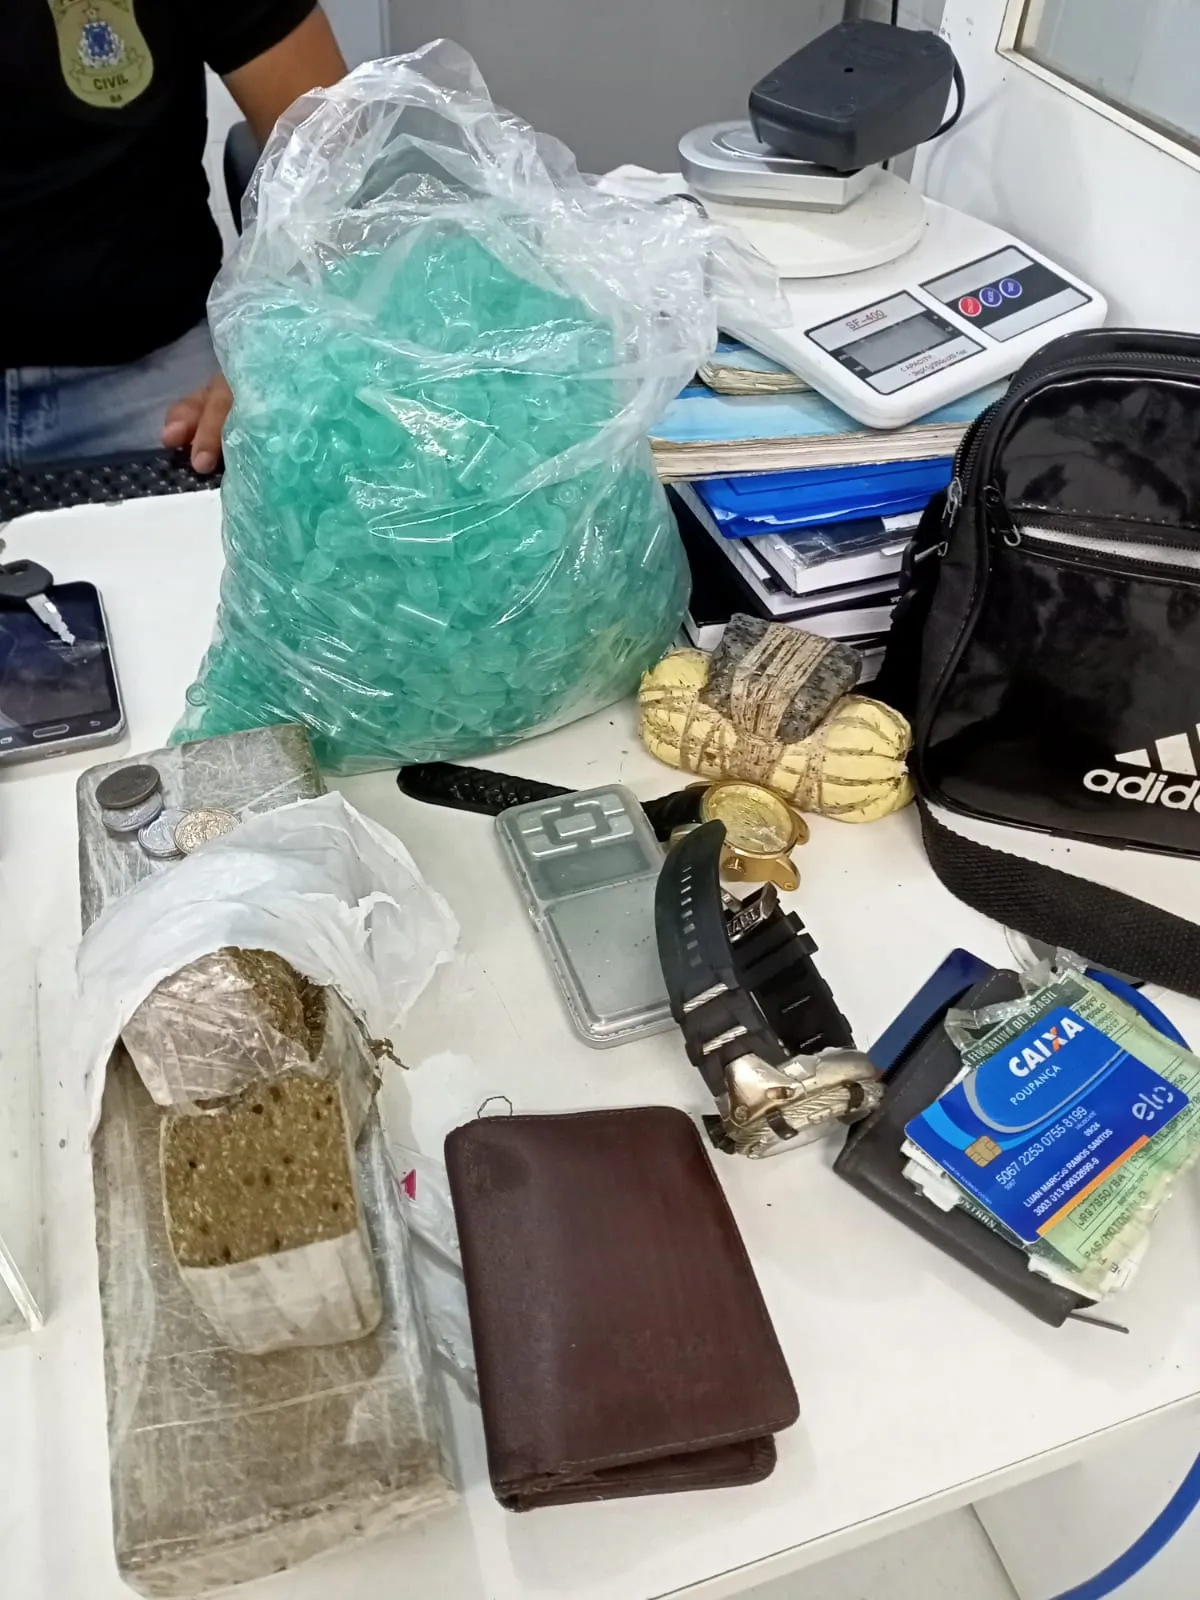 Drogas e munições foram apreendidas na ação | Foto: Divulgação | Polícia Civil